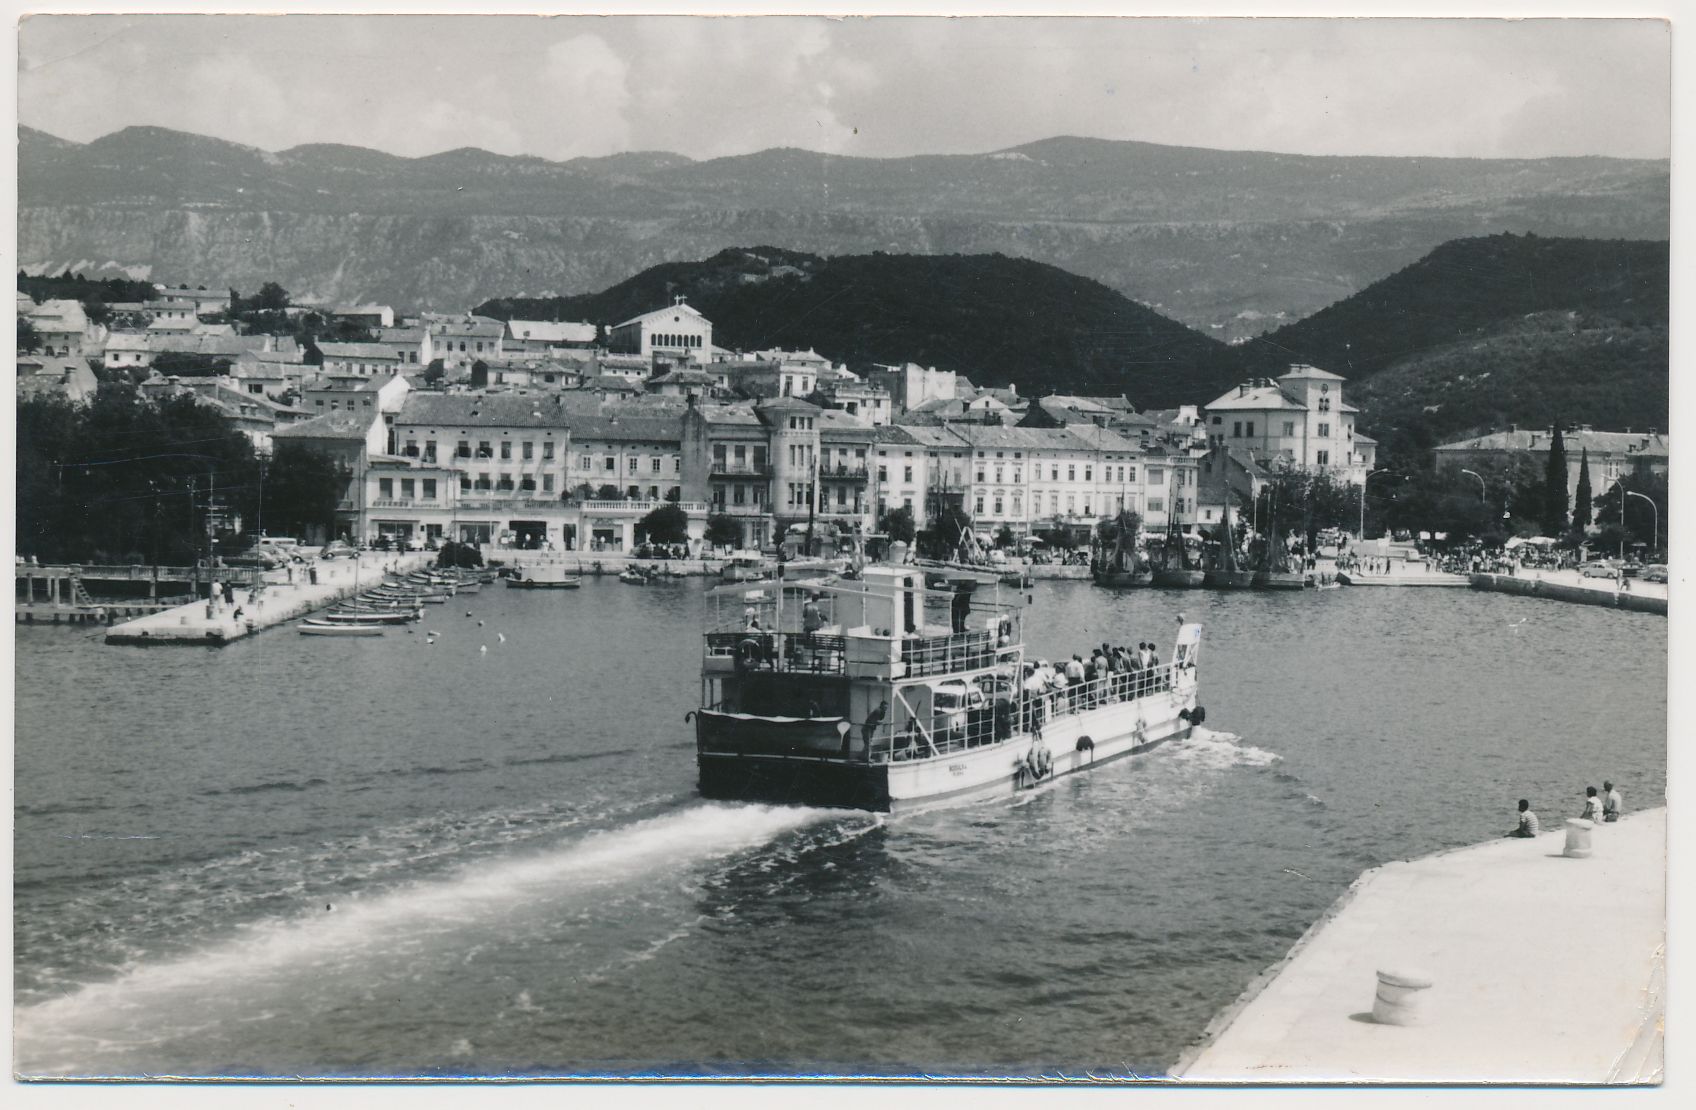  Trajekt "Bodulka" koji je krajem 1950-ih zaplovio na prvoj trajektnoj liniji Crikvenica - Šilo označio je početak novog doba u kojemu trajekti preuzimaju primat nad klasičnim putničkim brodovima